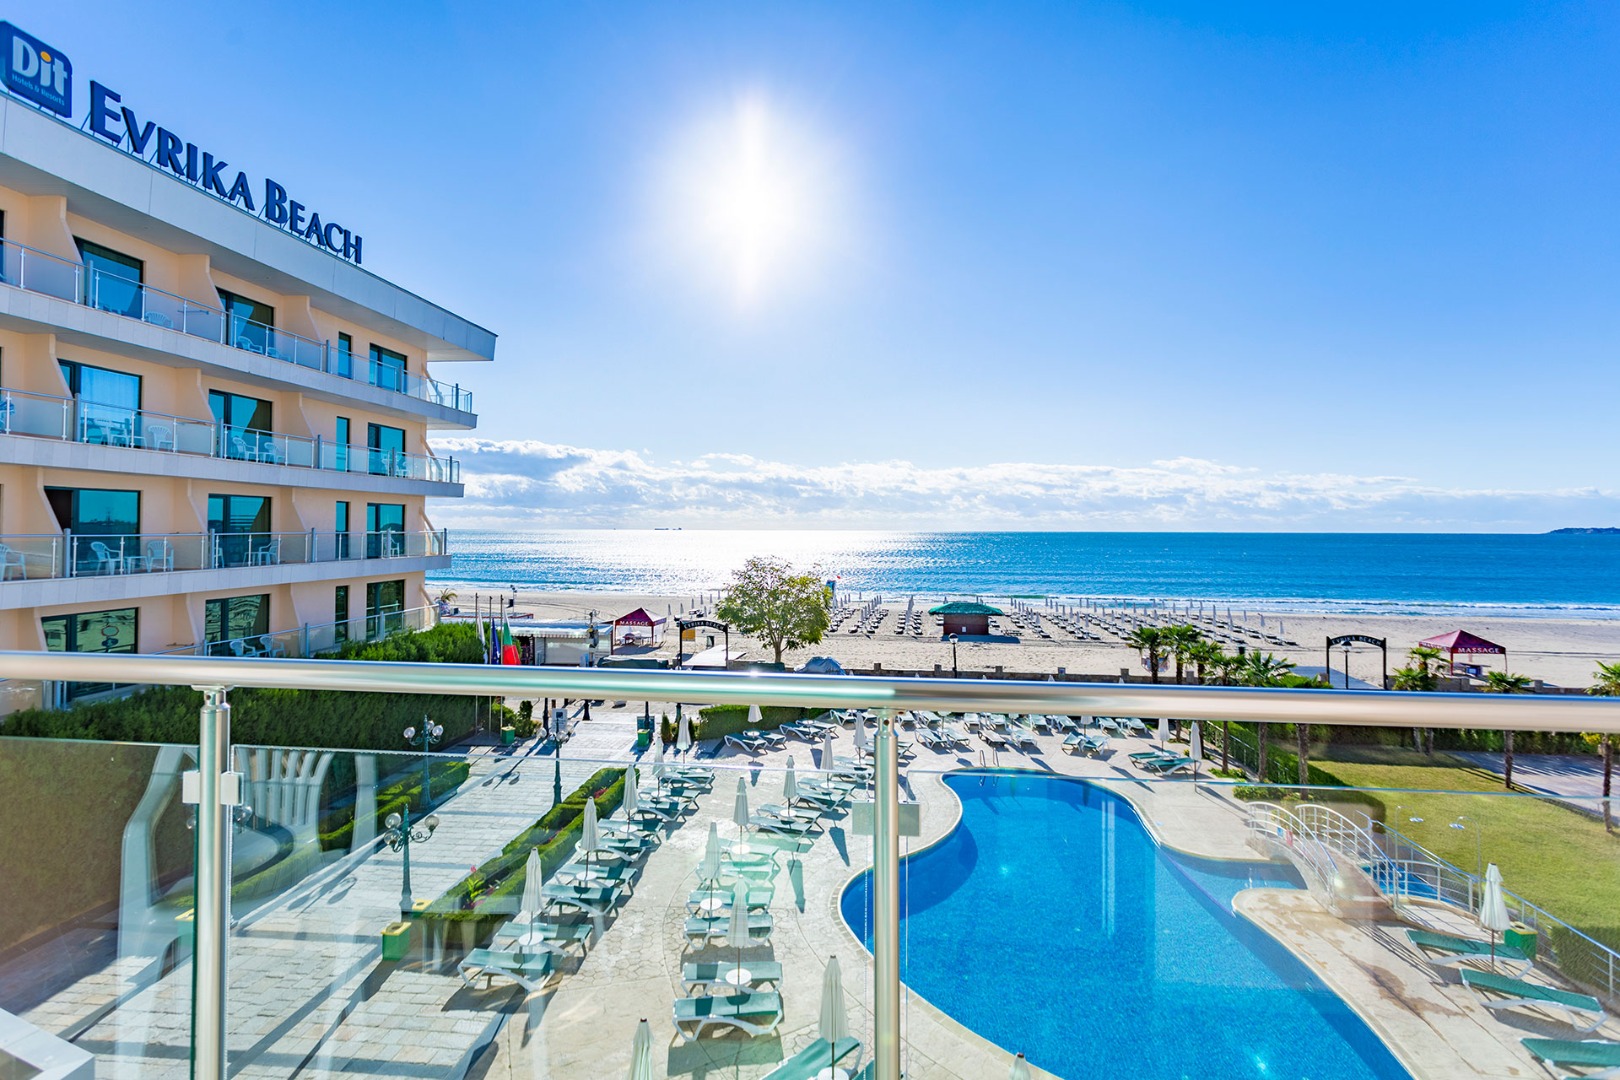 Beach evrika hotel inclusive dit club